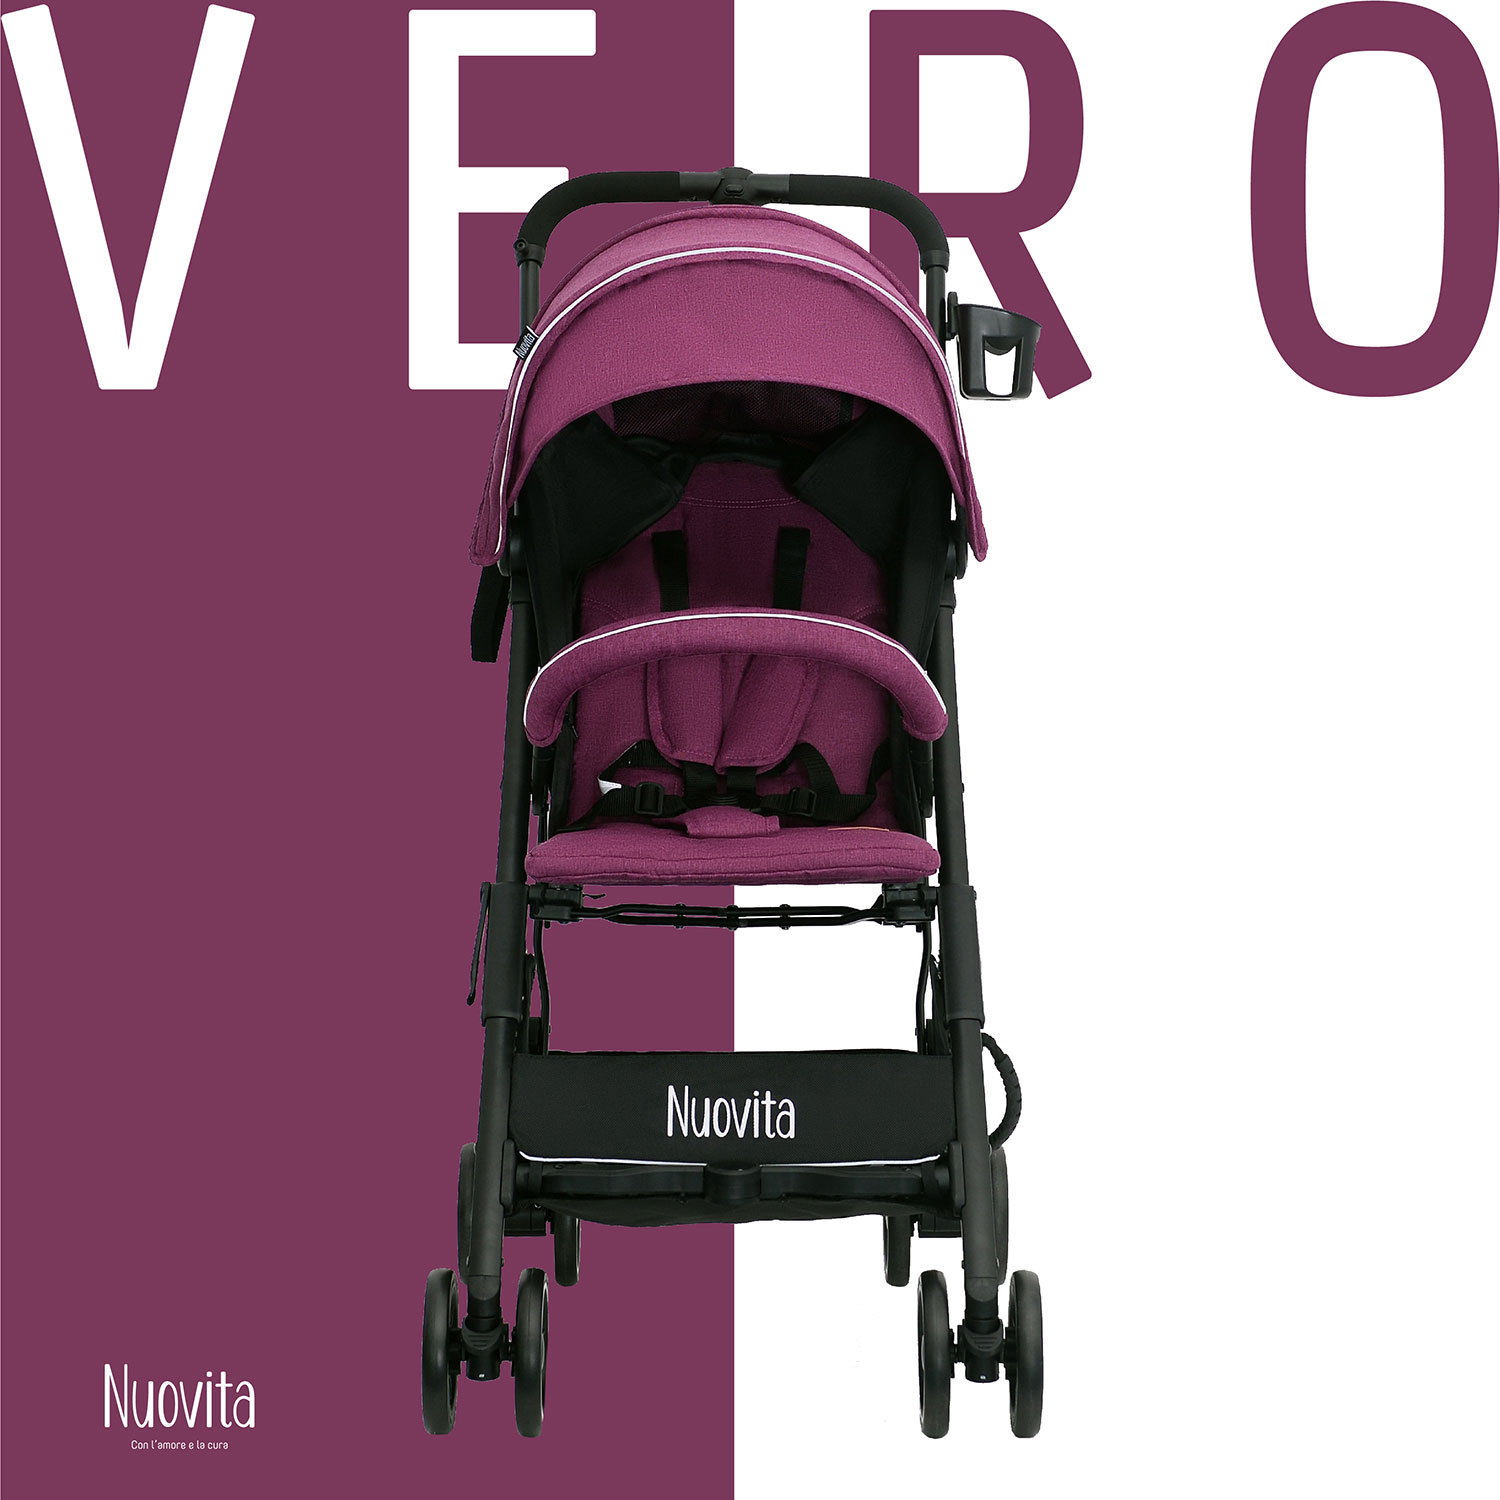 Прогулочная коляска Nuovita Vero Viola Фиолетовый прогулочная коляска nuovita vero viola фиолетовый